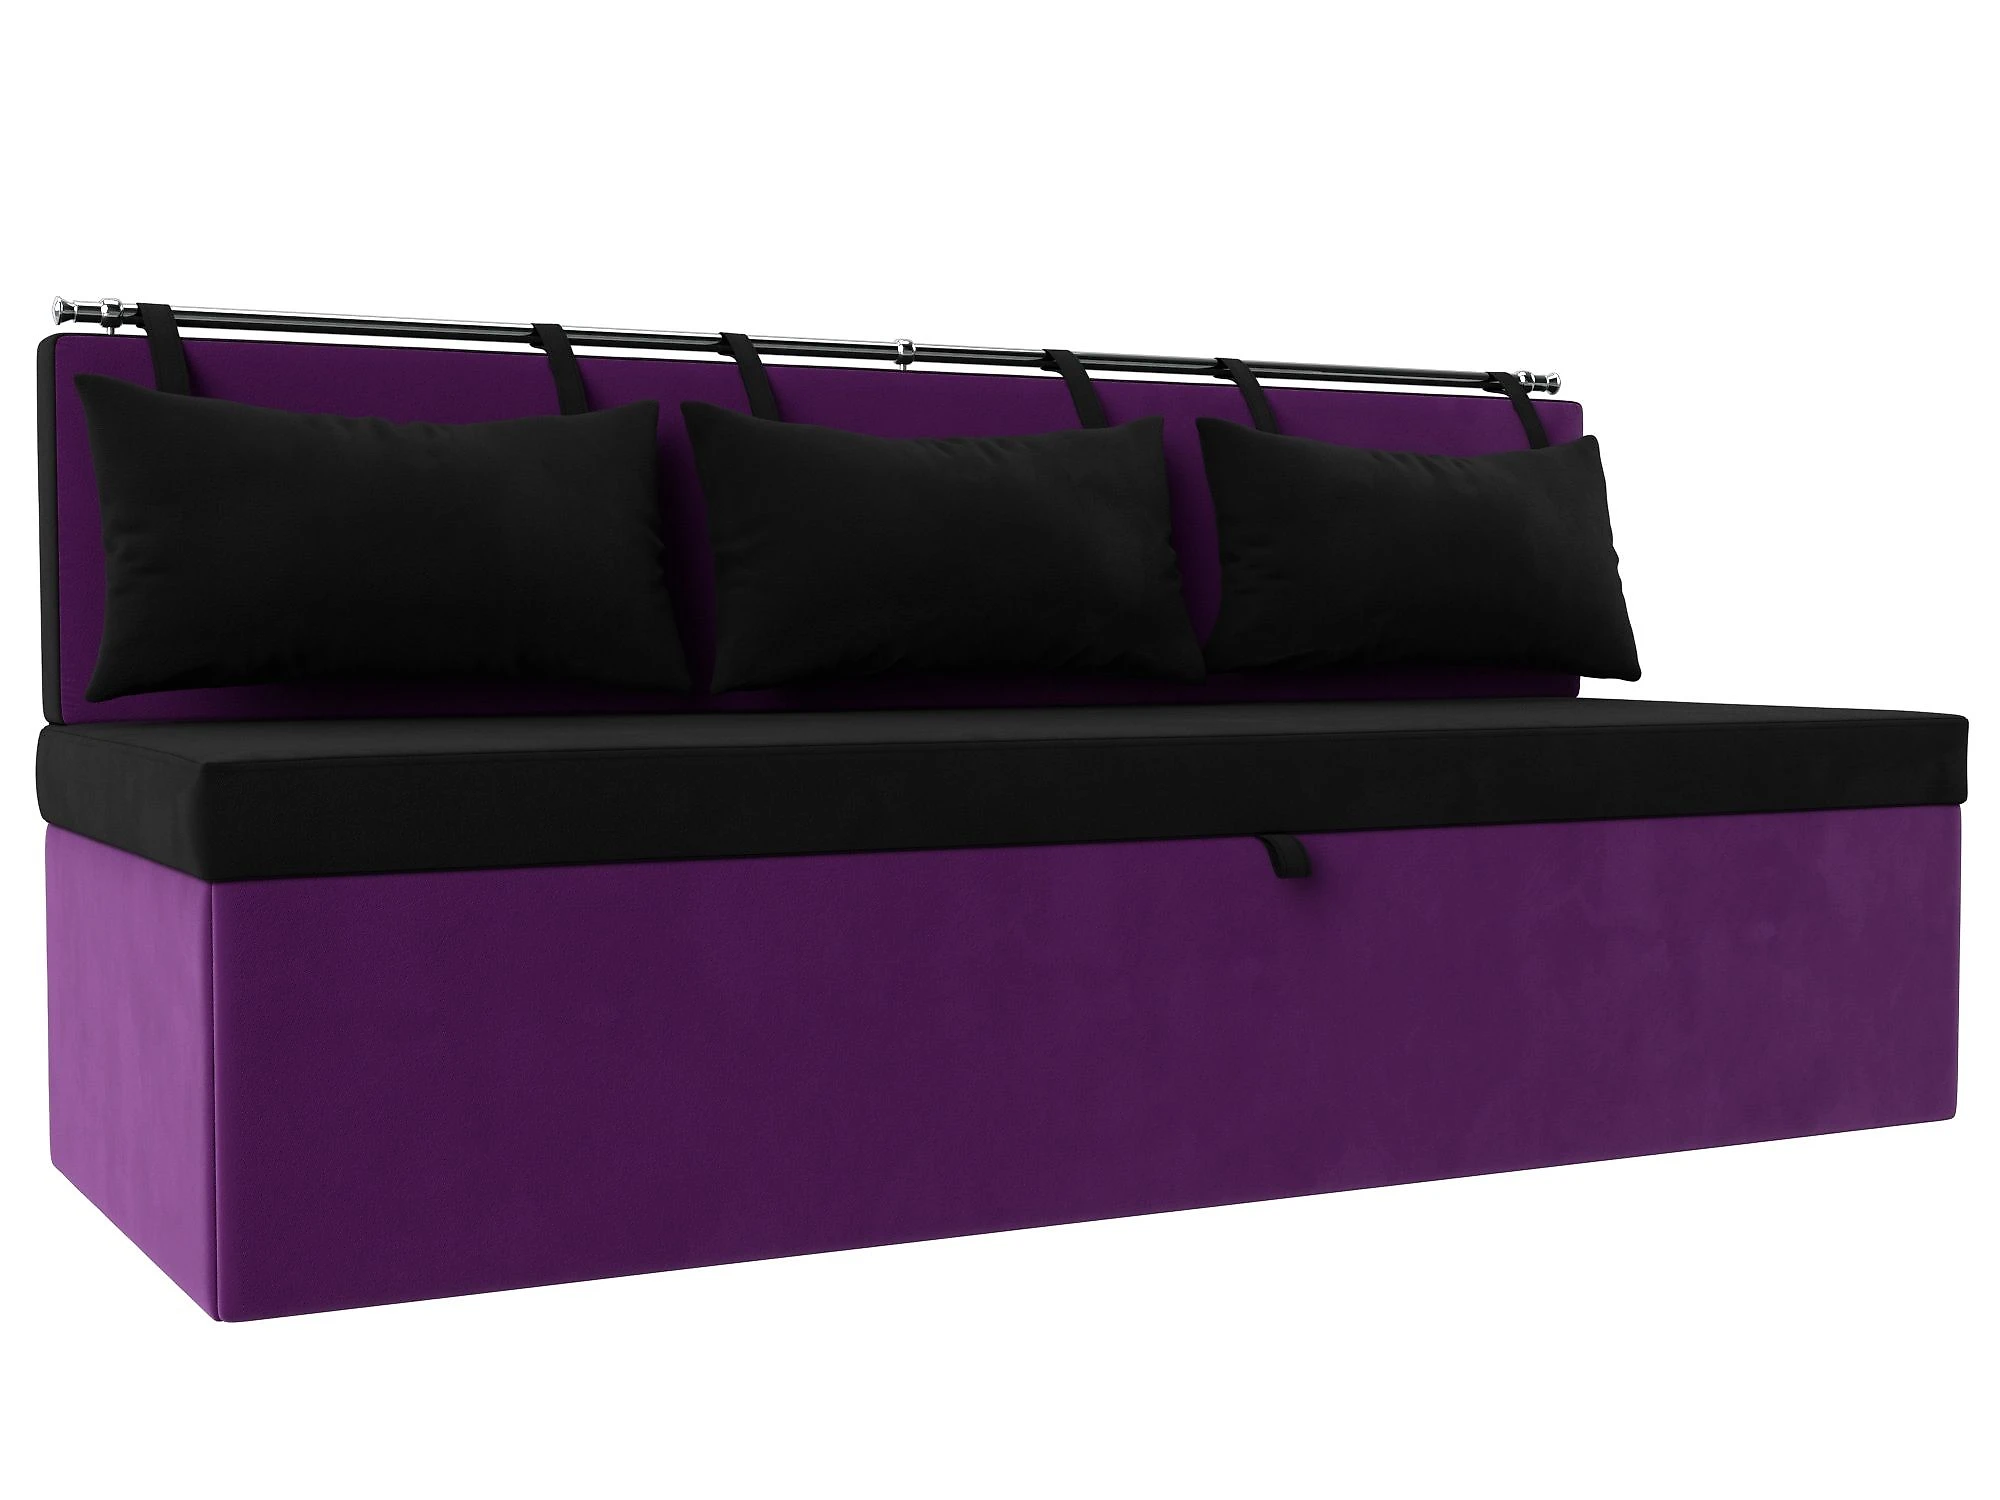  диван на кухню со спальным местом Метро Вельвет Виолет